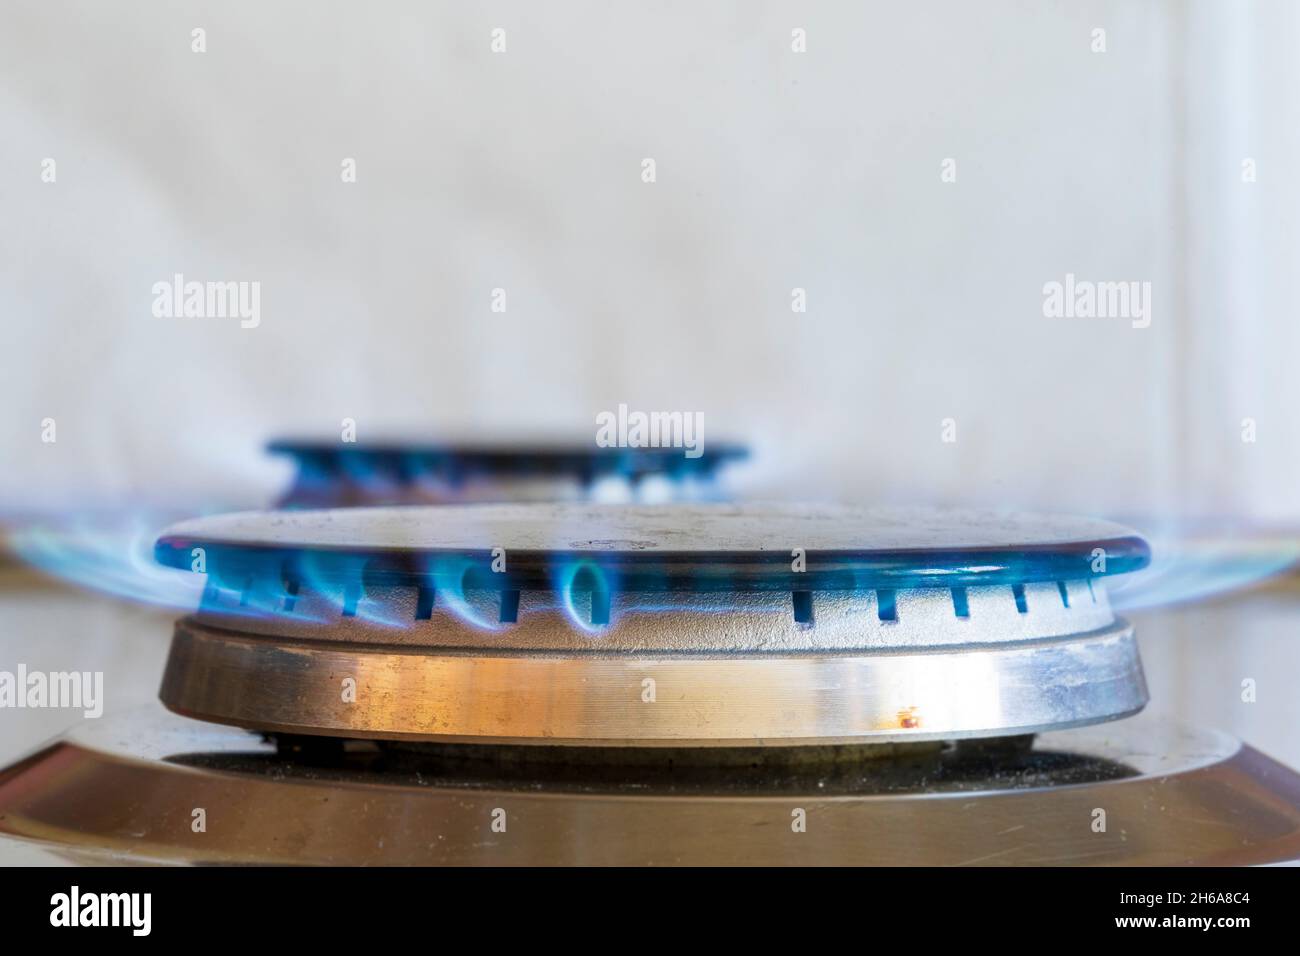 Anneau à gaz allumé sur la table de cuisson à gaz.Anneau circulaire gris recouvert d'un dessus noir en fonte, flammes bleues provenant des évents à gaz sur le côté de l'anneau. Banque D'Images